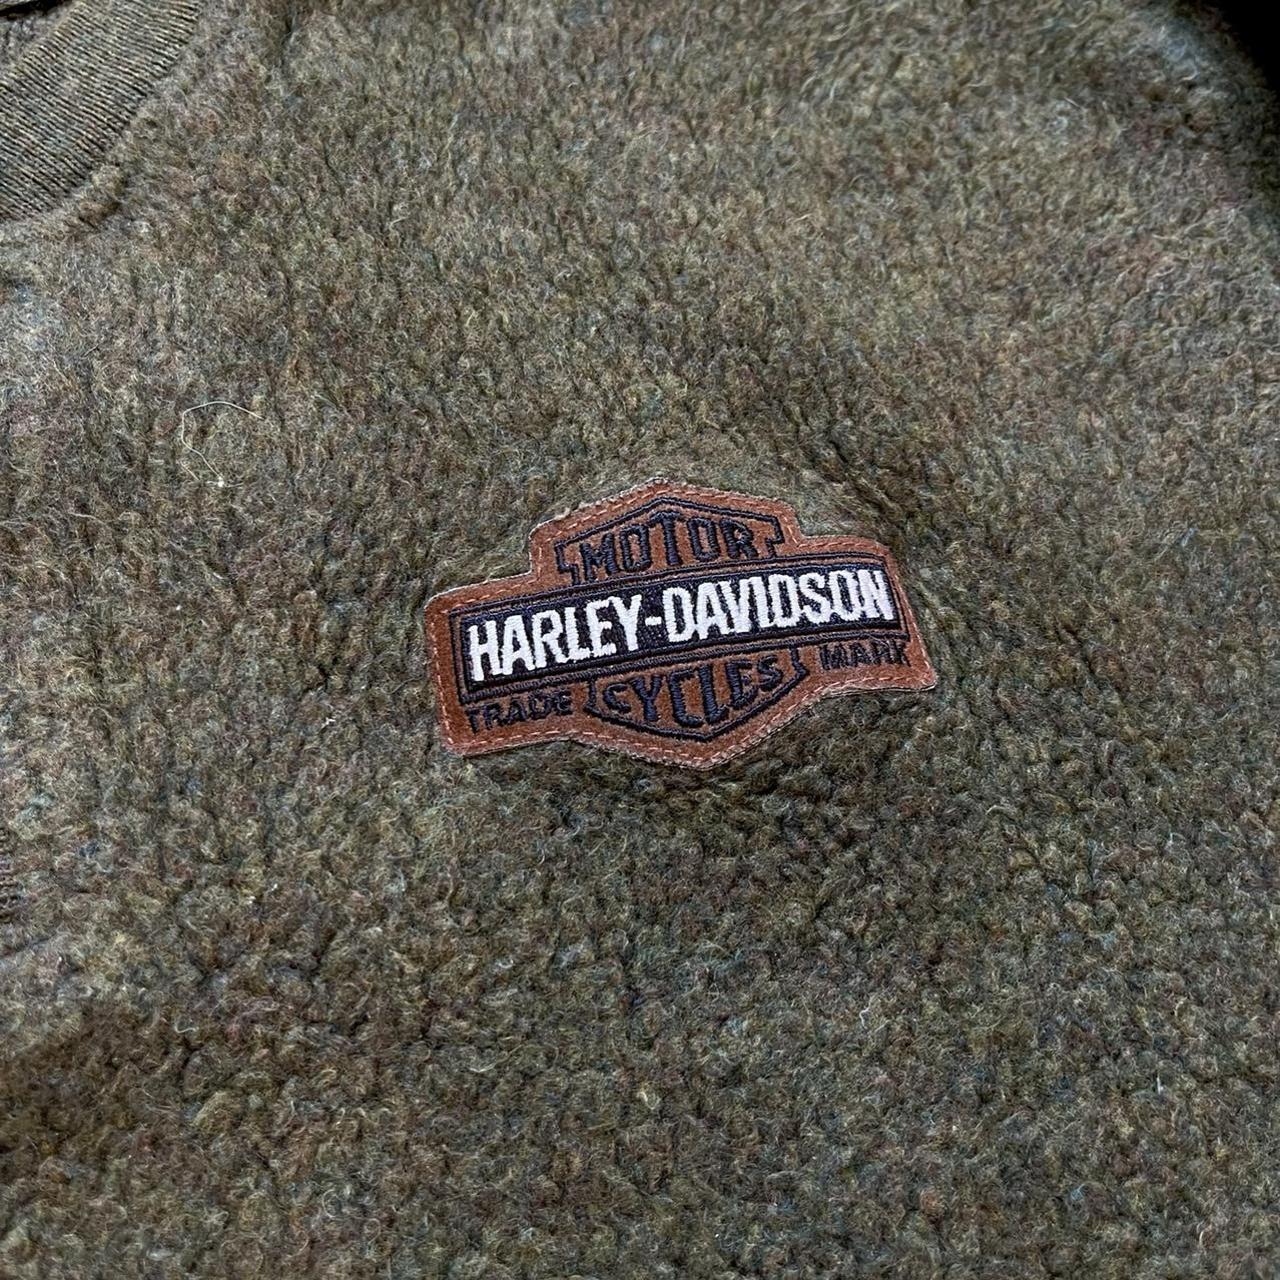 Vintage 90s Harley-Davidson Fleece Pullover Made In... - Depop